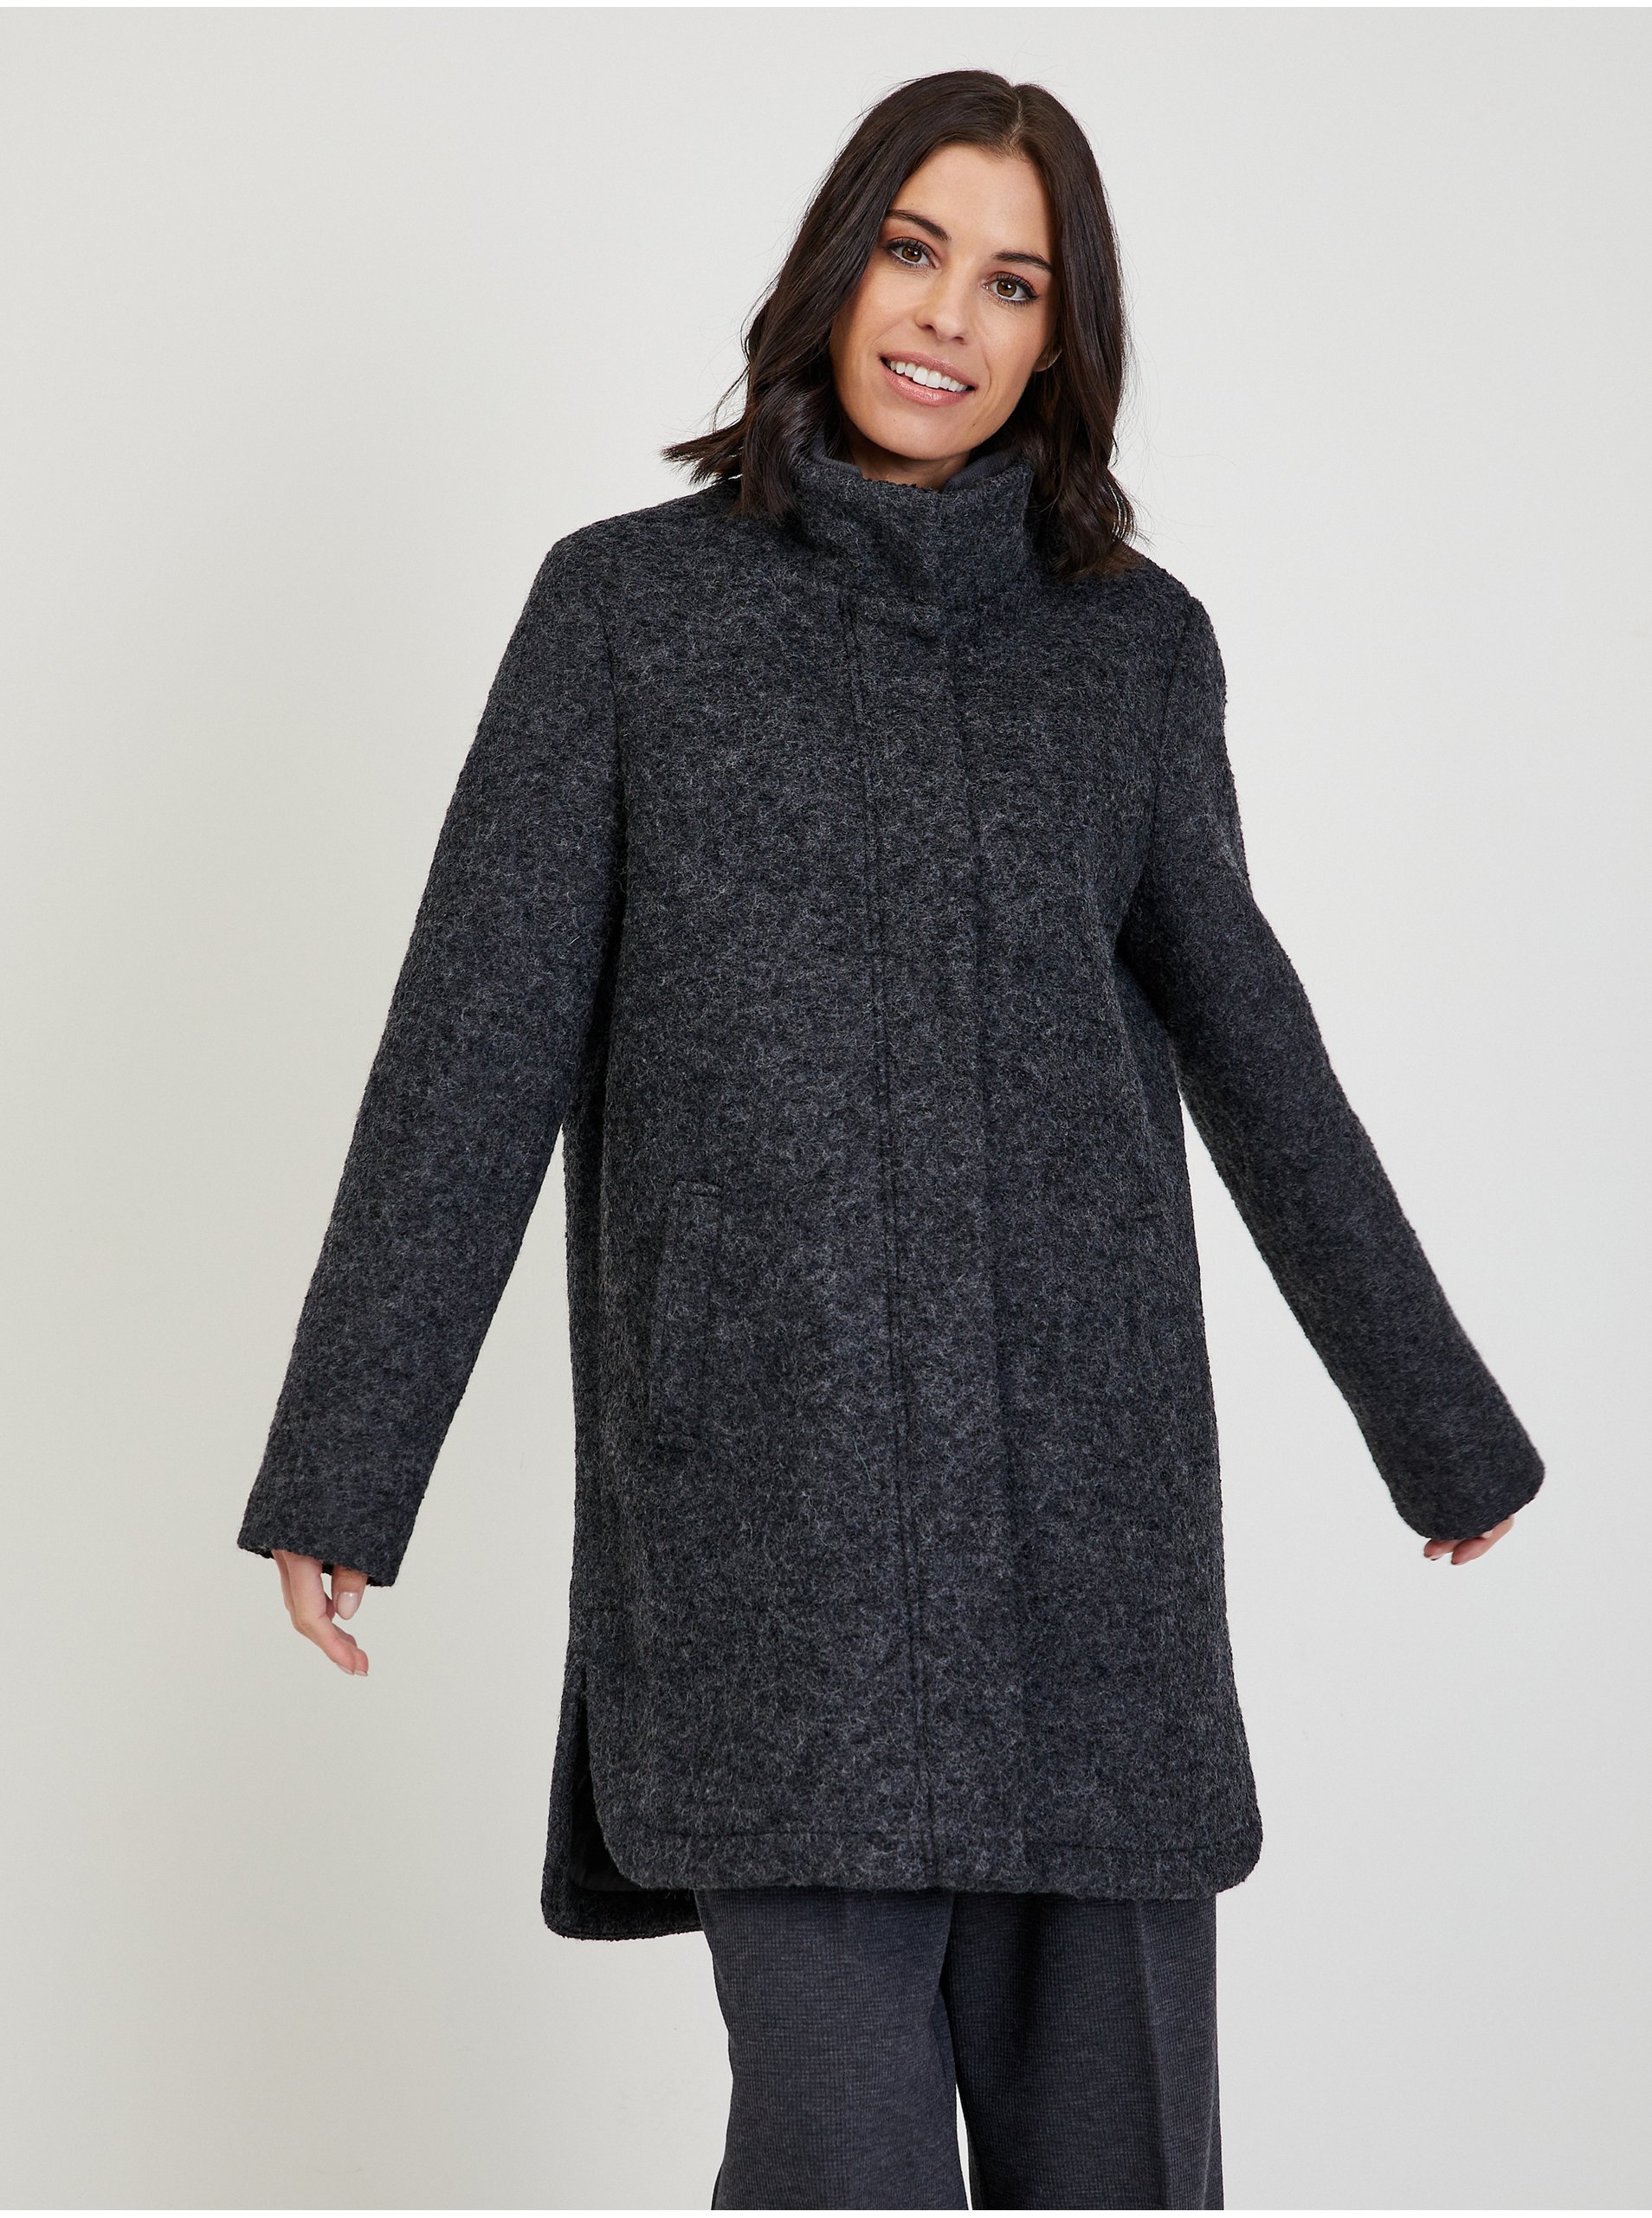 E-shop Tmavě šedý dámský žíhaný kabát s příměsí vlny Tom Tailor Denim